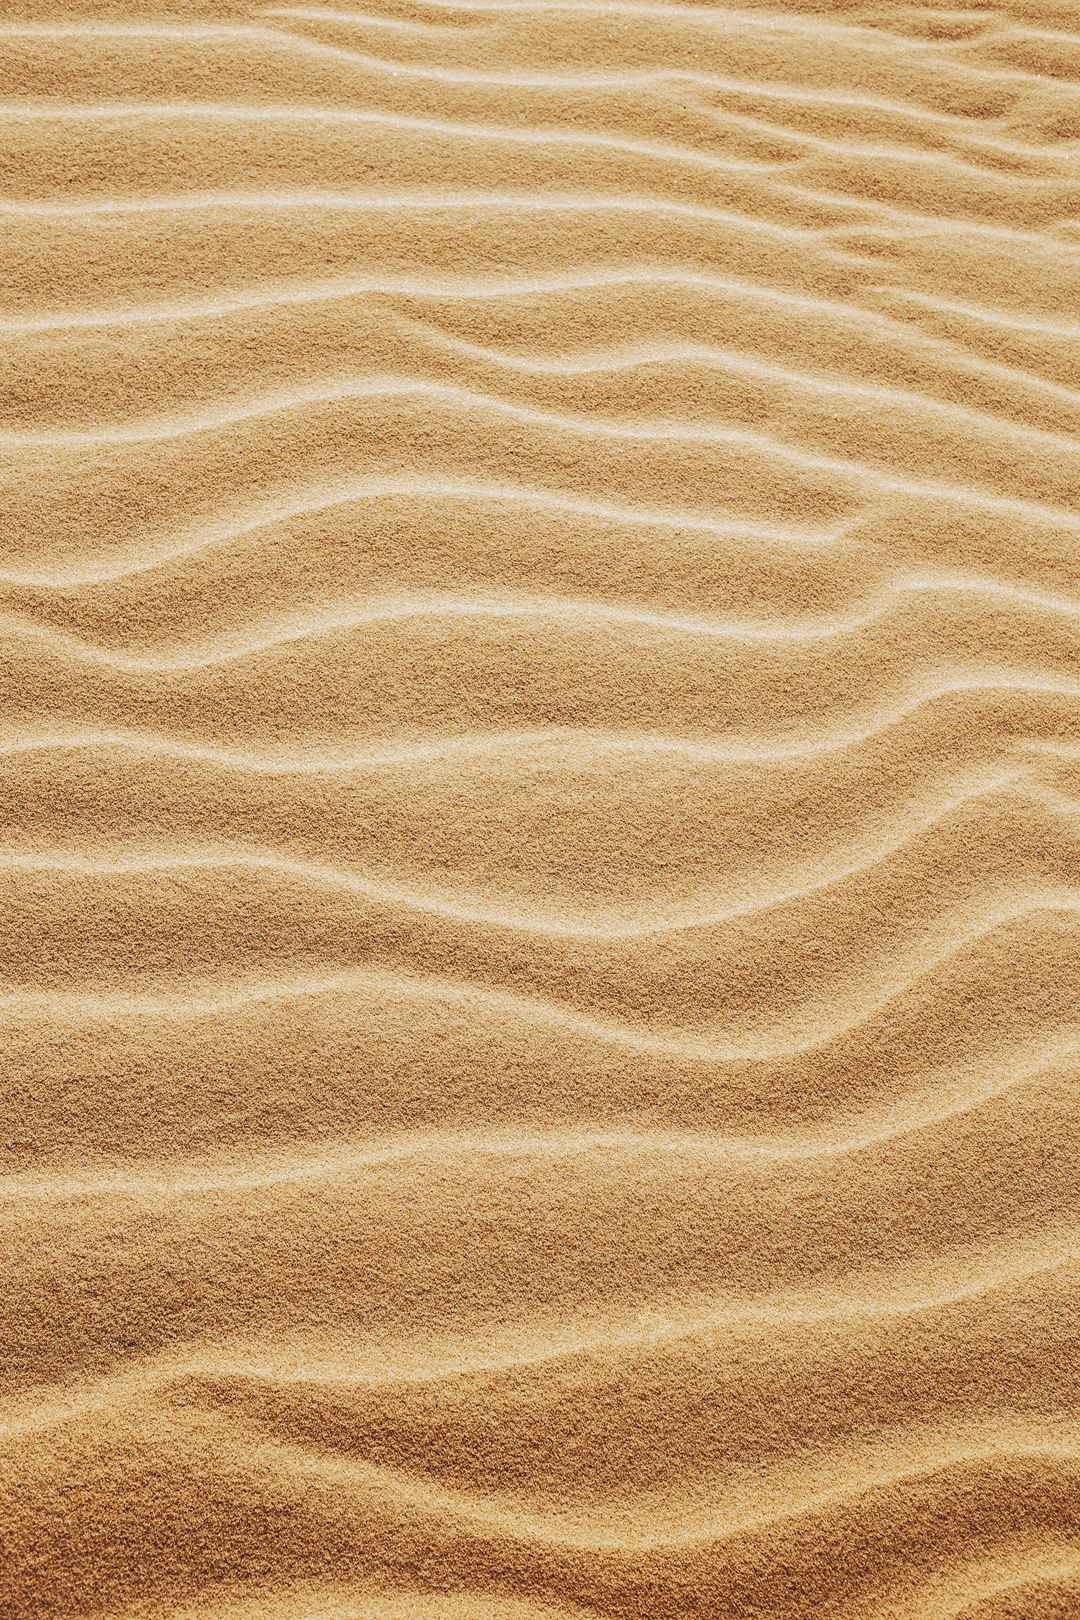 沙漠中的细沙丘图片-